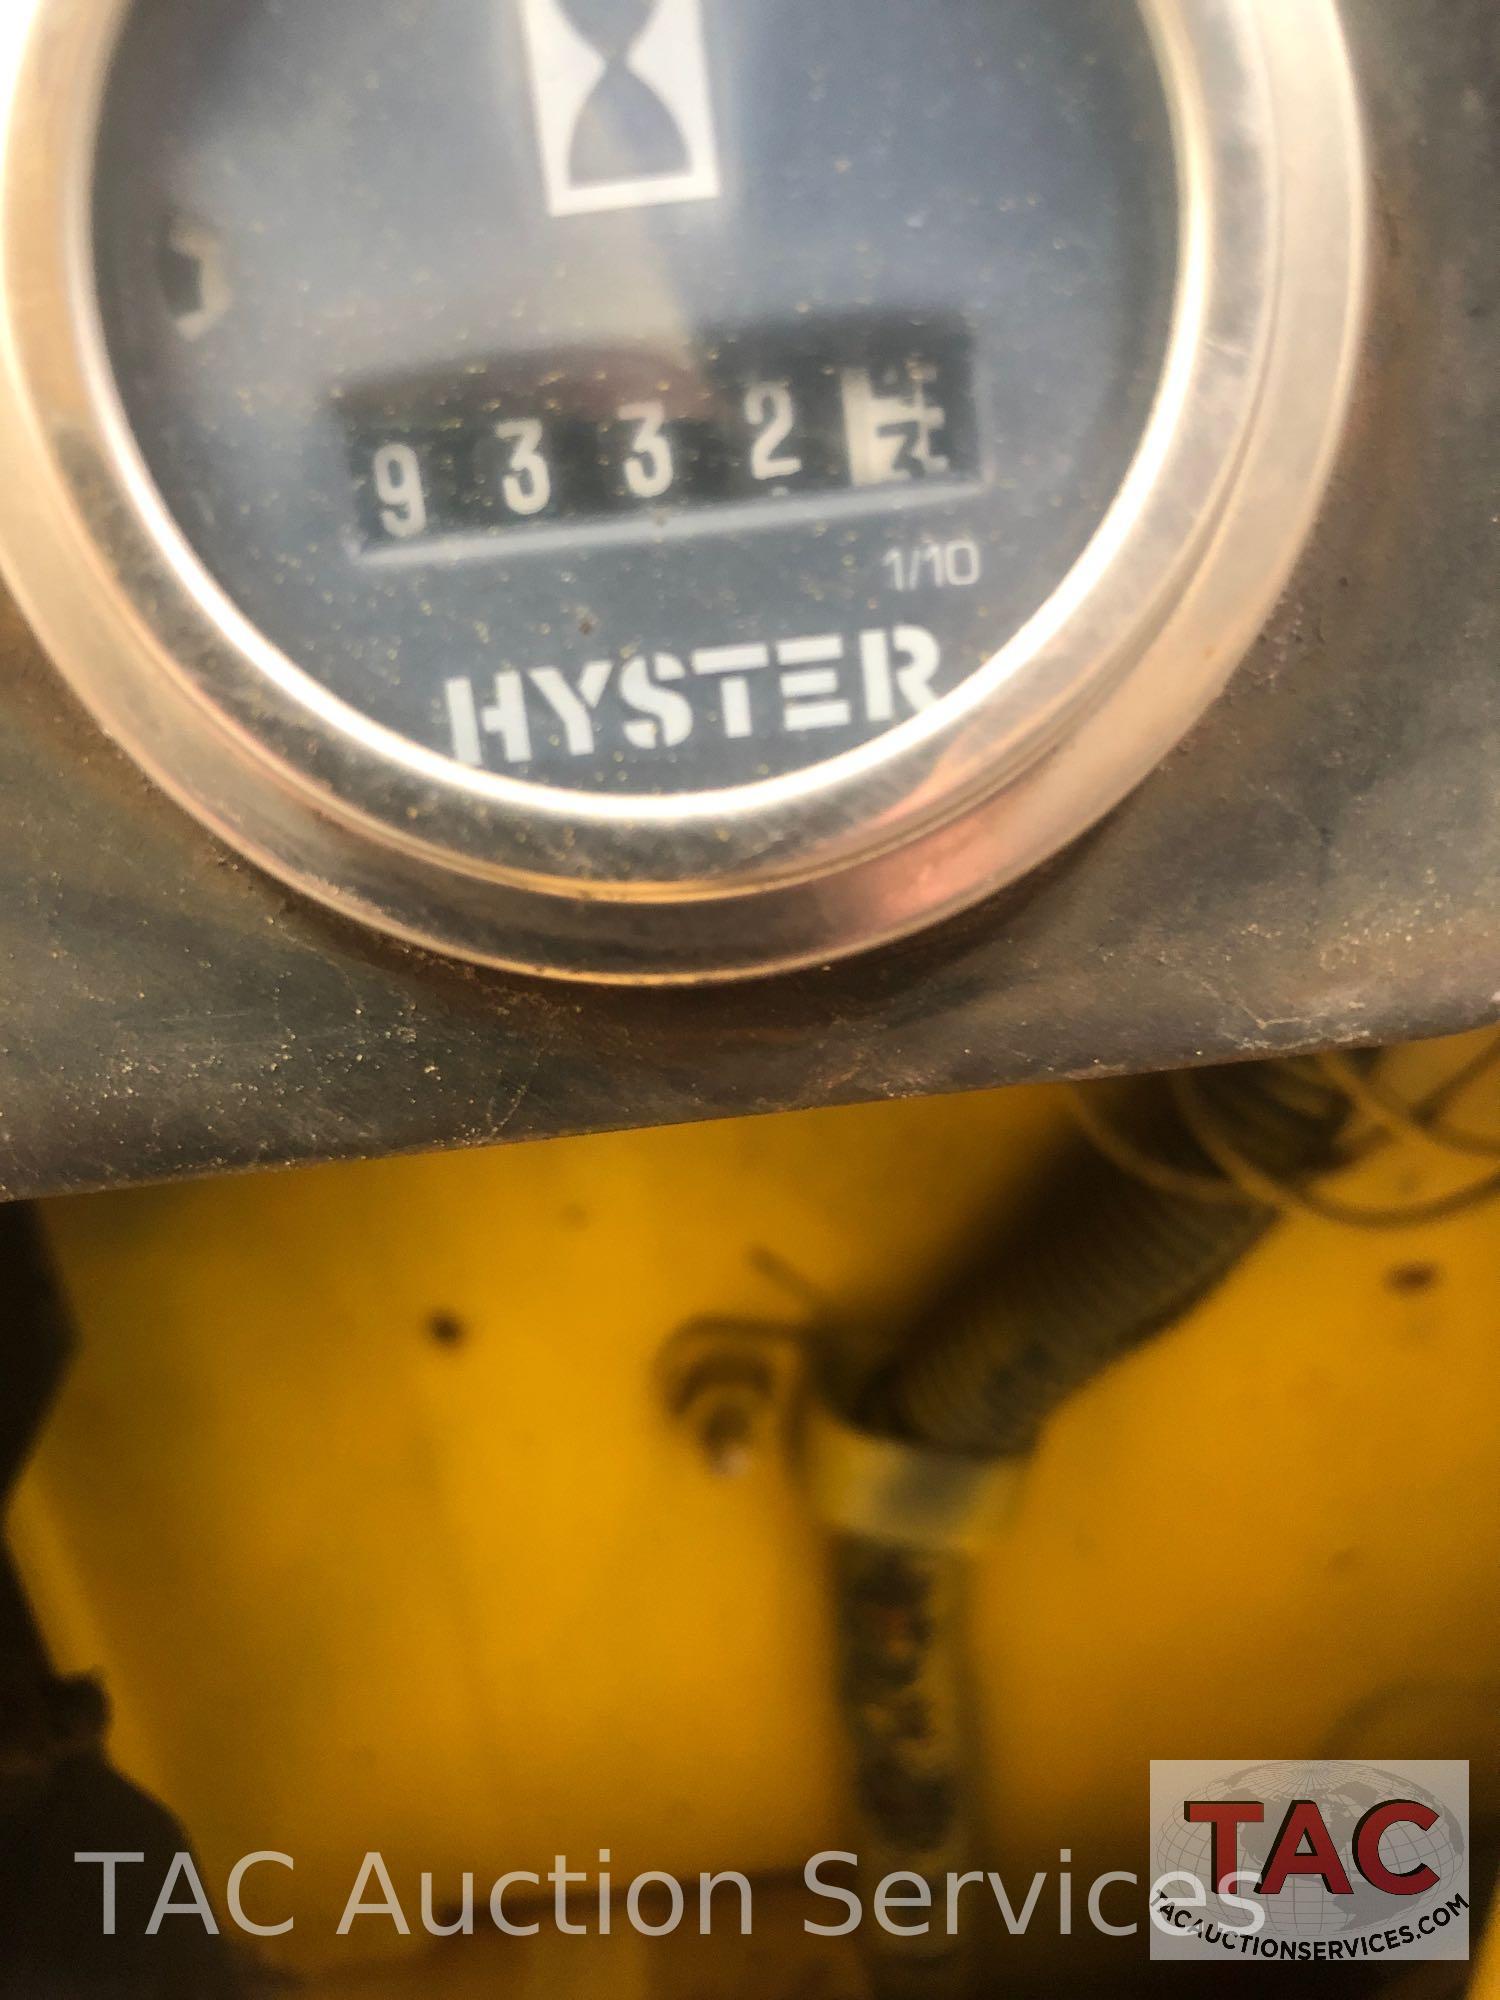 1984 Hyster Forklift